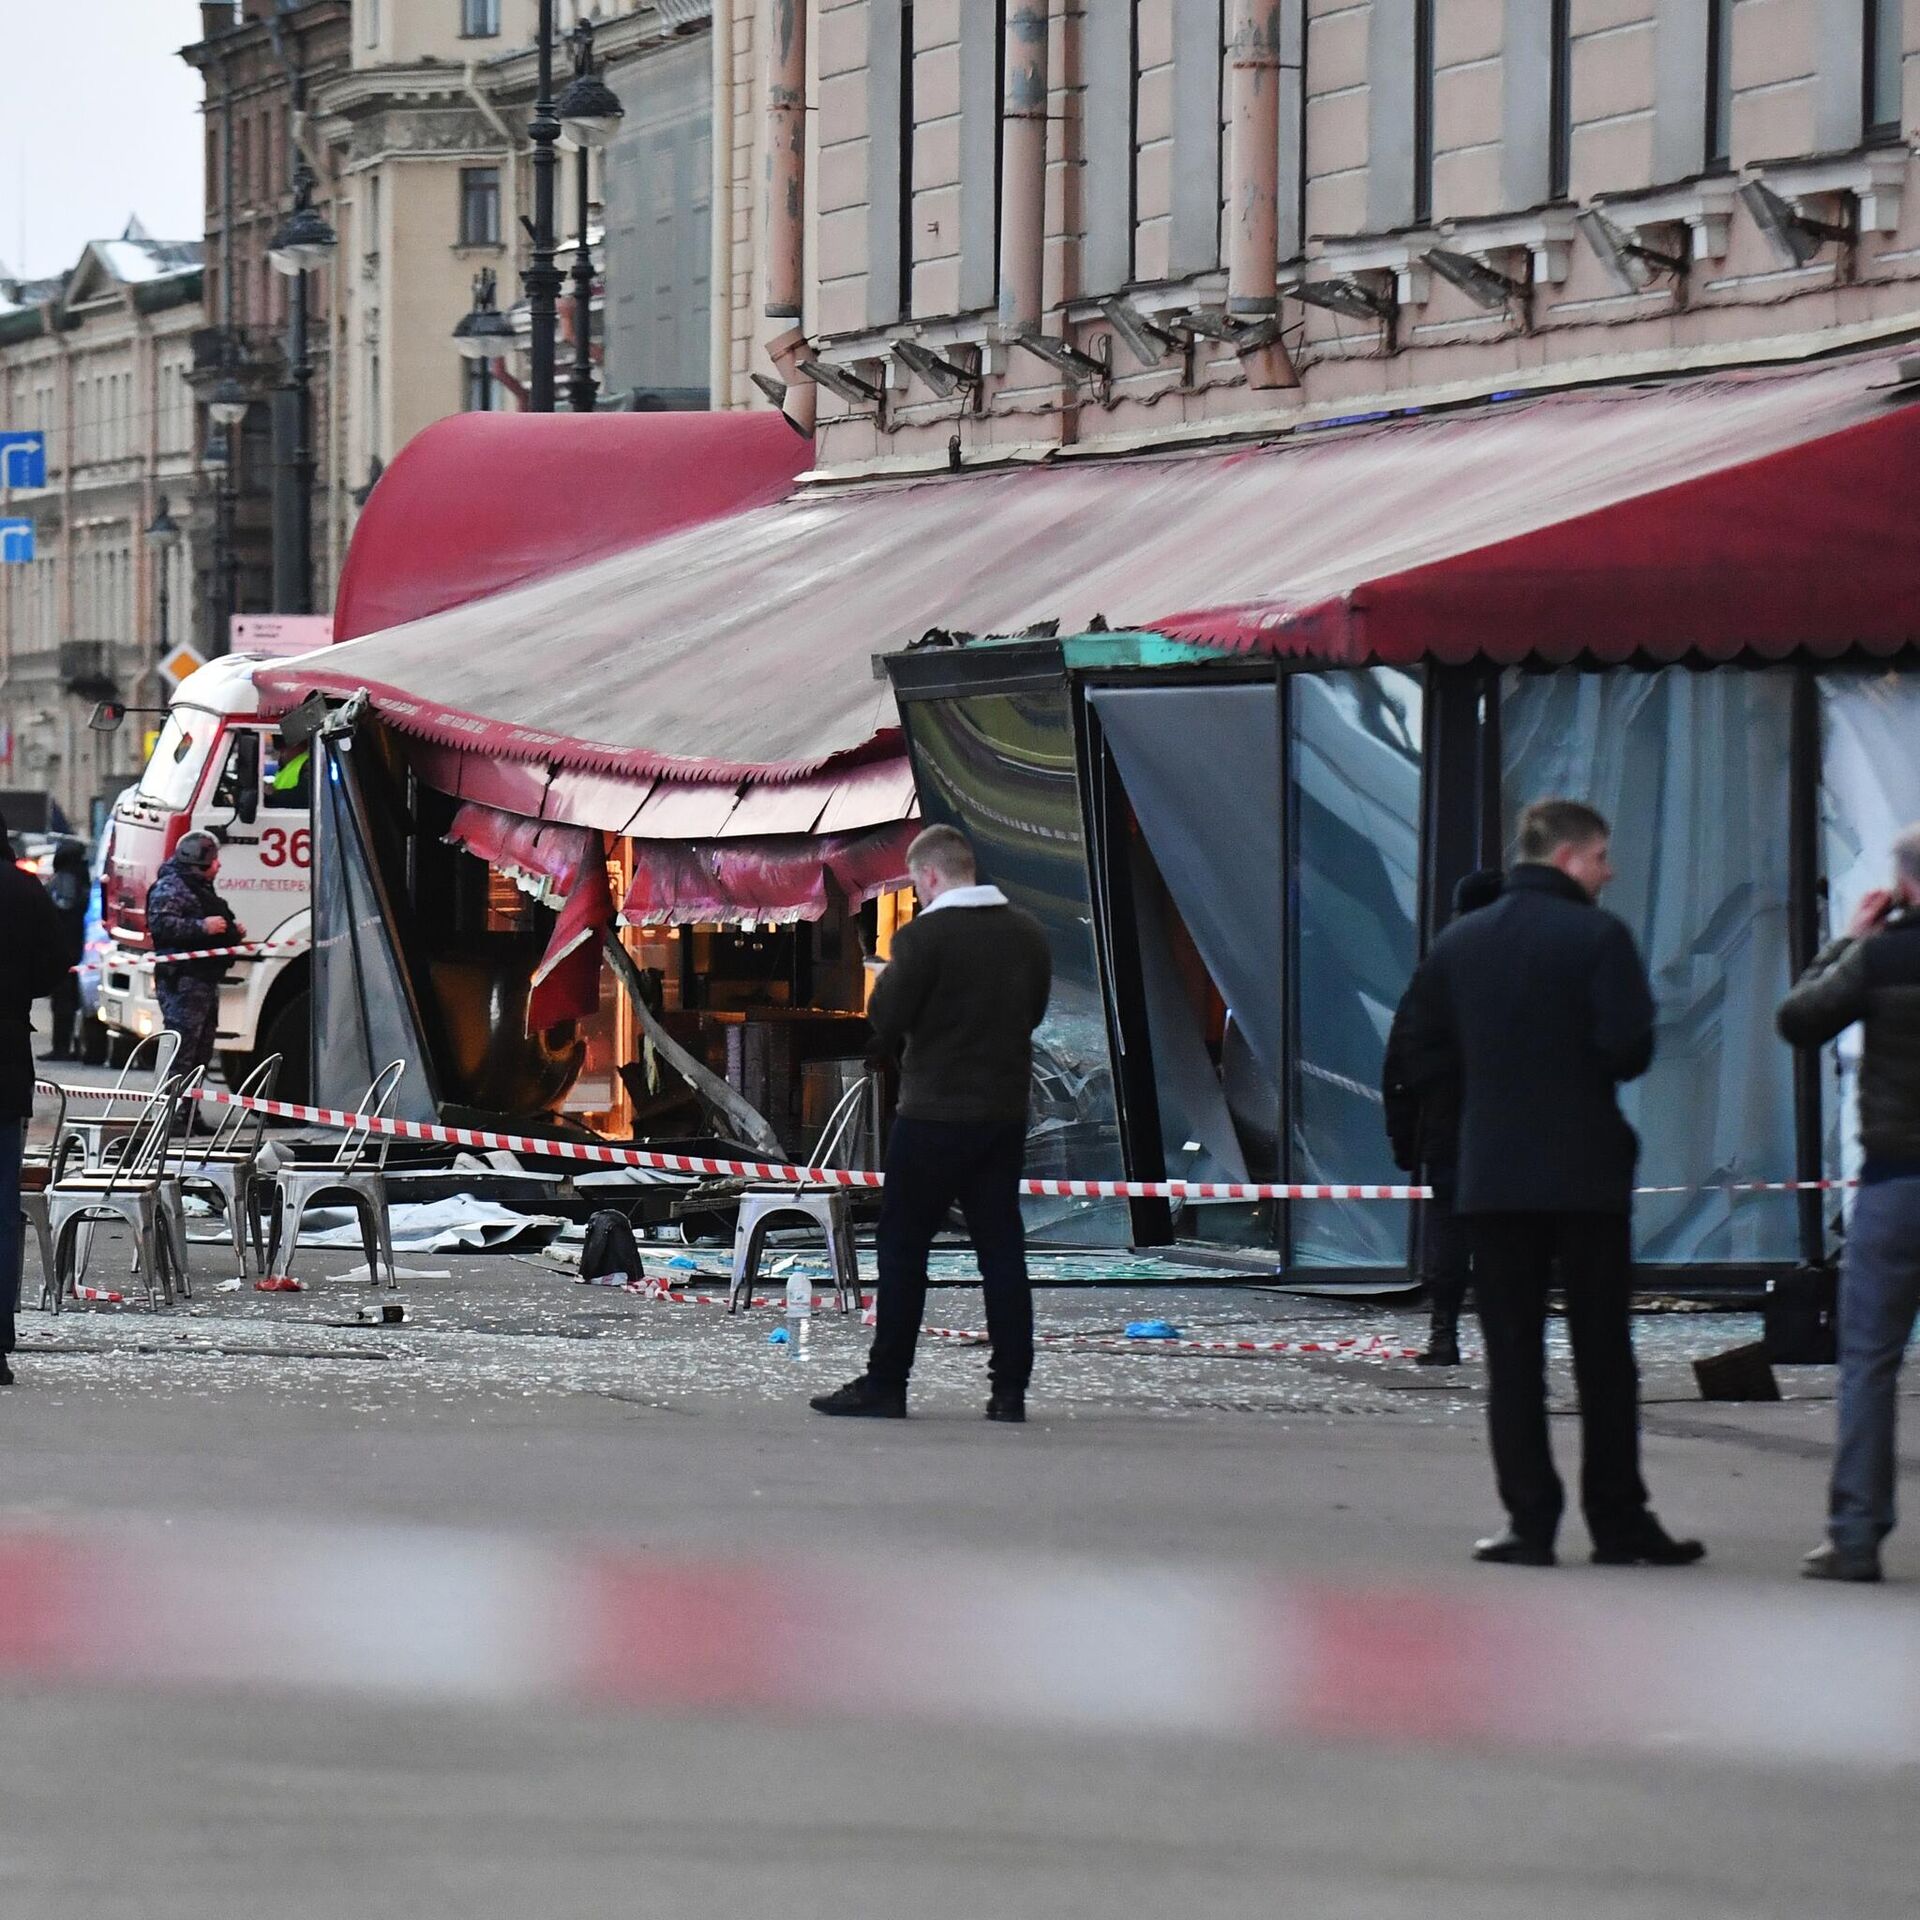 Сегодняшние новости о теракте в москве. Взорвали кафе в Санкт-Петербурге 2 апреля. Теракт в Санкт Петербурге. Теракт в Питере на набережной.